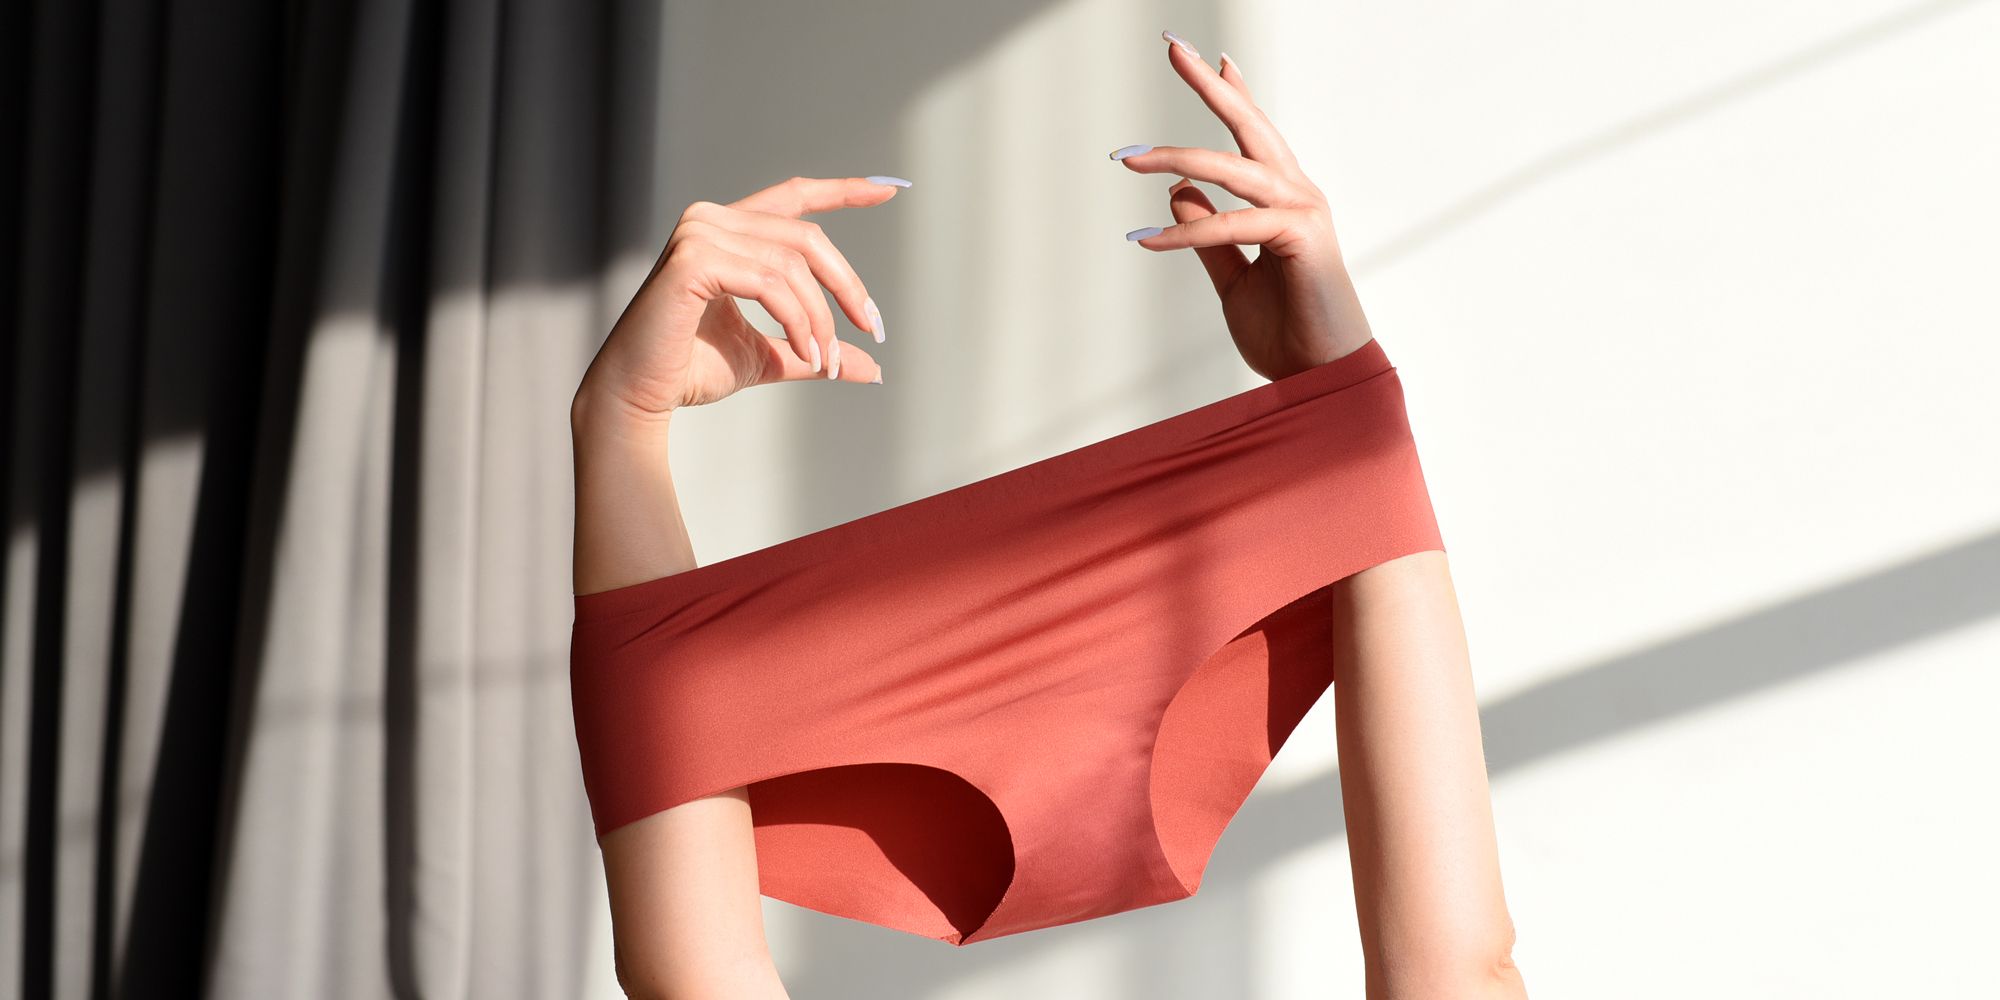 LEEy-world Womens Panties High Waist Leakproof Underwear For Women Plus  Size Panties Leak Proof Menstrual Panties Physiological Pants Black,One Size  